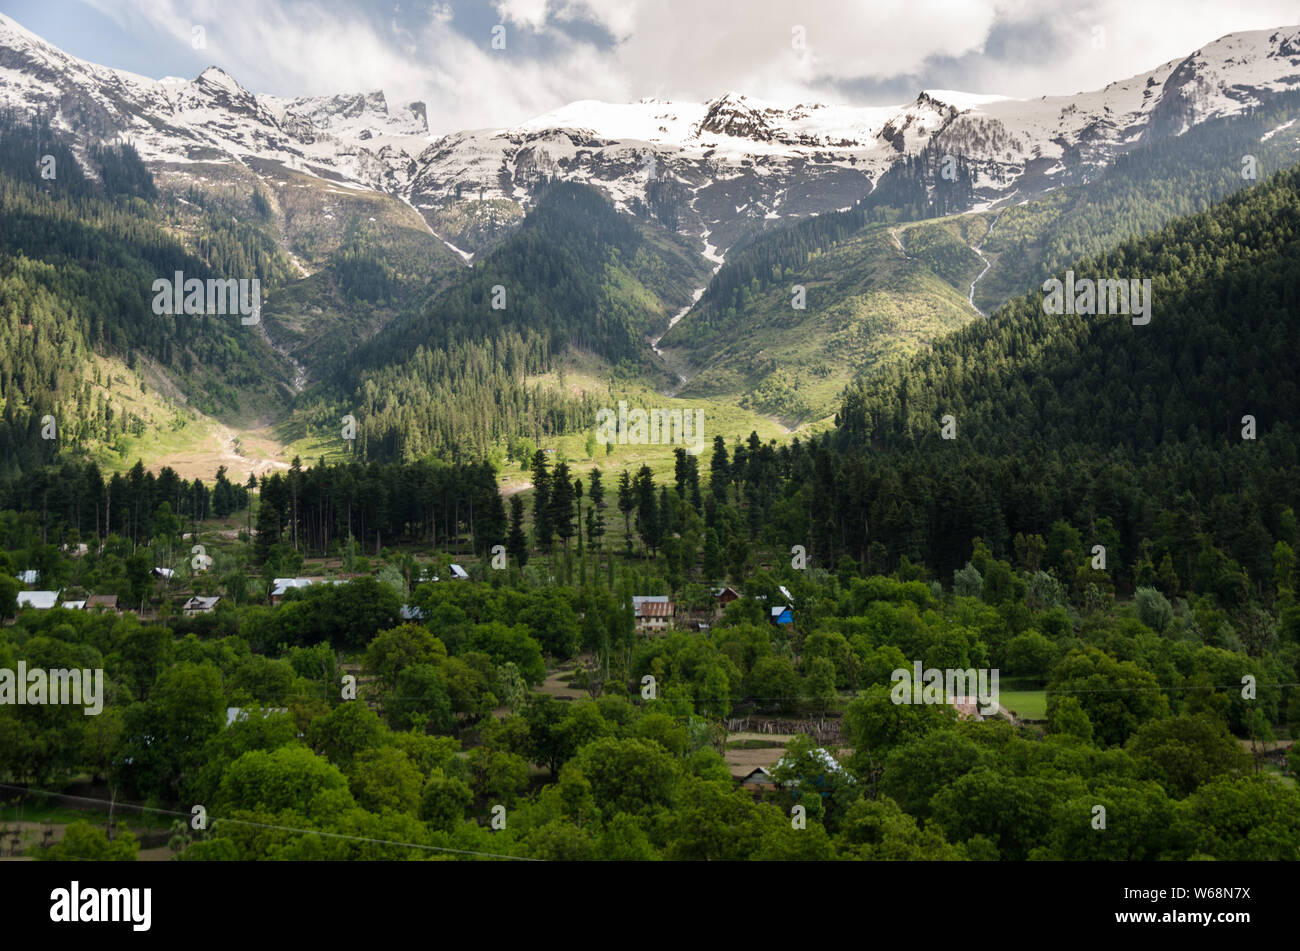 Schönen Blick auf die bergige Landschaft während der Reise nach Sonamarg auf Srinagar - Leh Highway, Jammu und Kaschmir, Indien Stockfoto